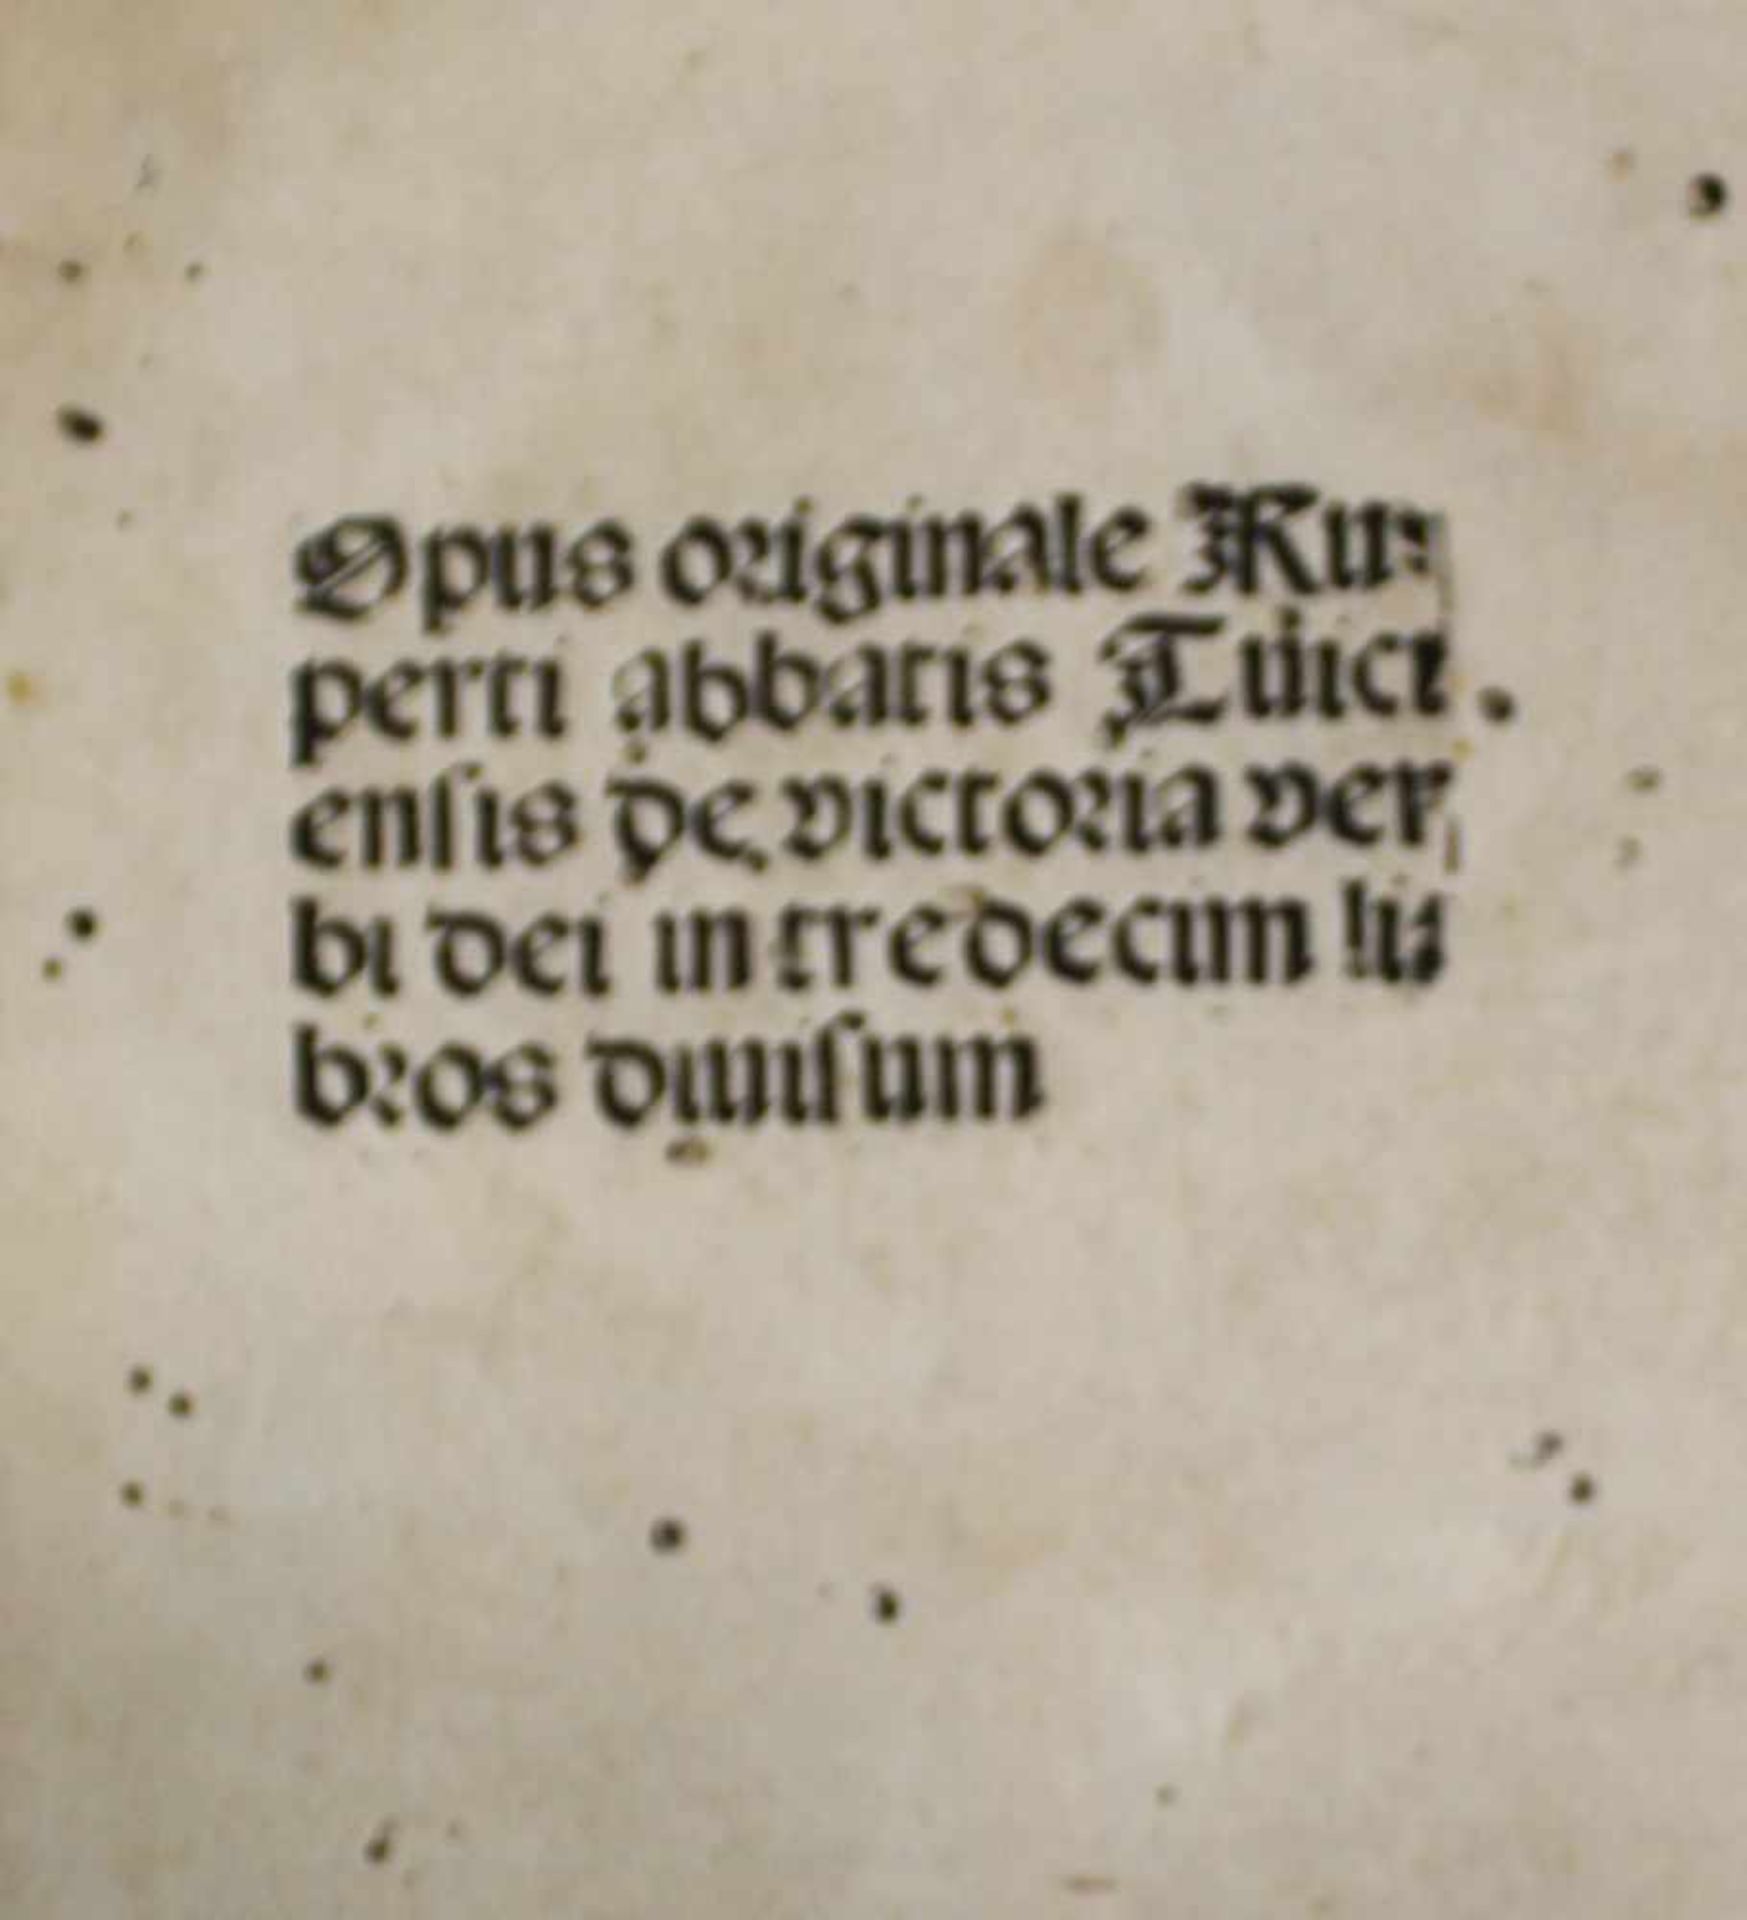 Rupertus Tuitiensis [Rupert von Deutz].Opus originale ... de victoria verbi dei in tredecum libros